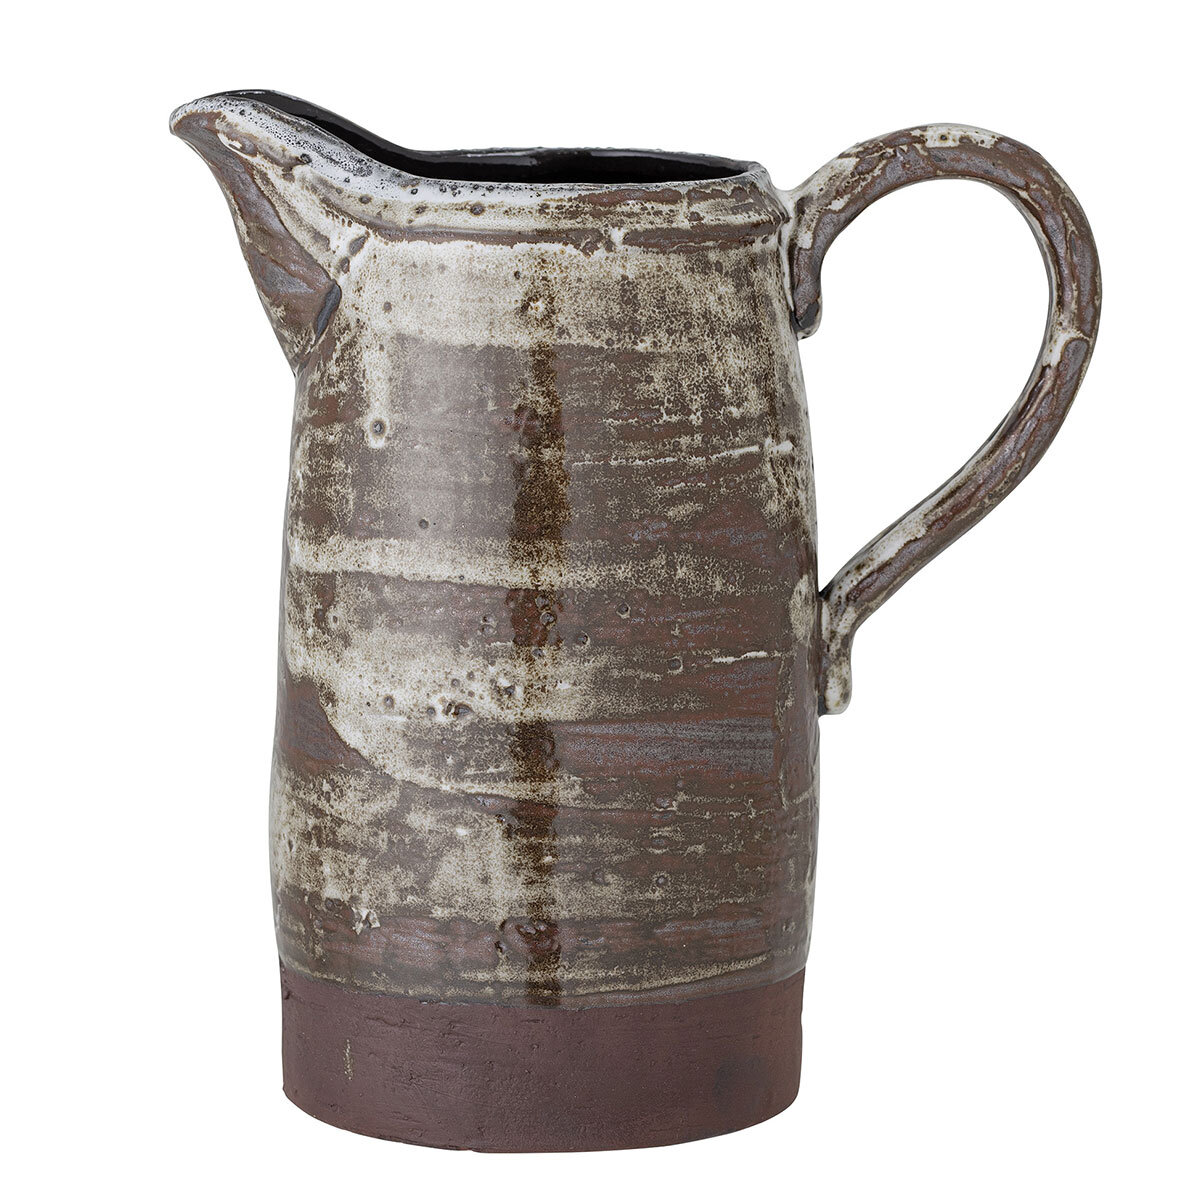 Calla Jug - Brown stoneware vase